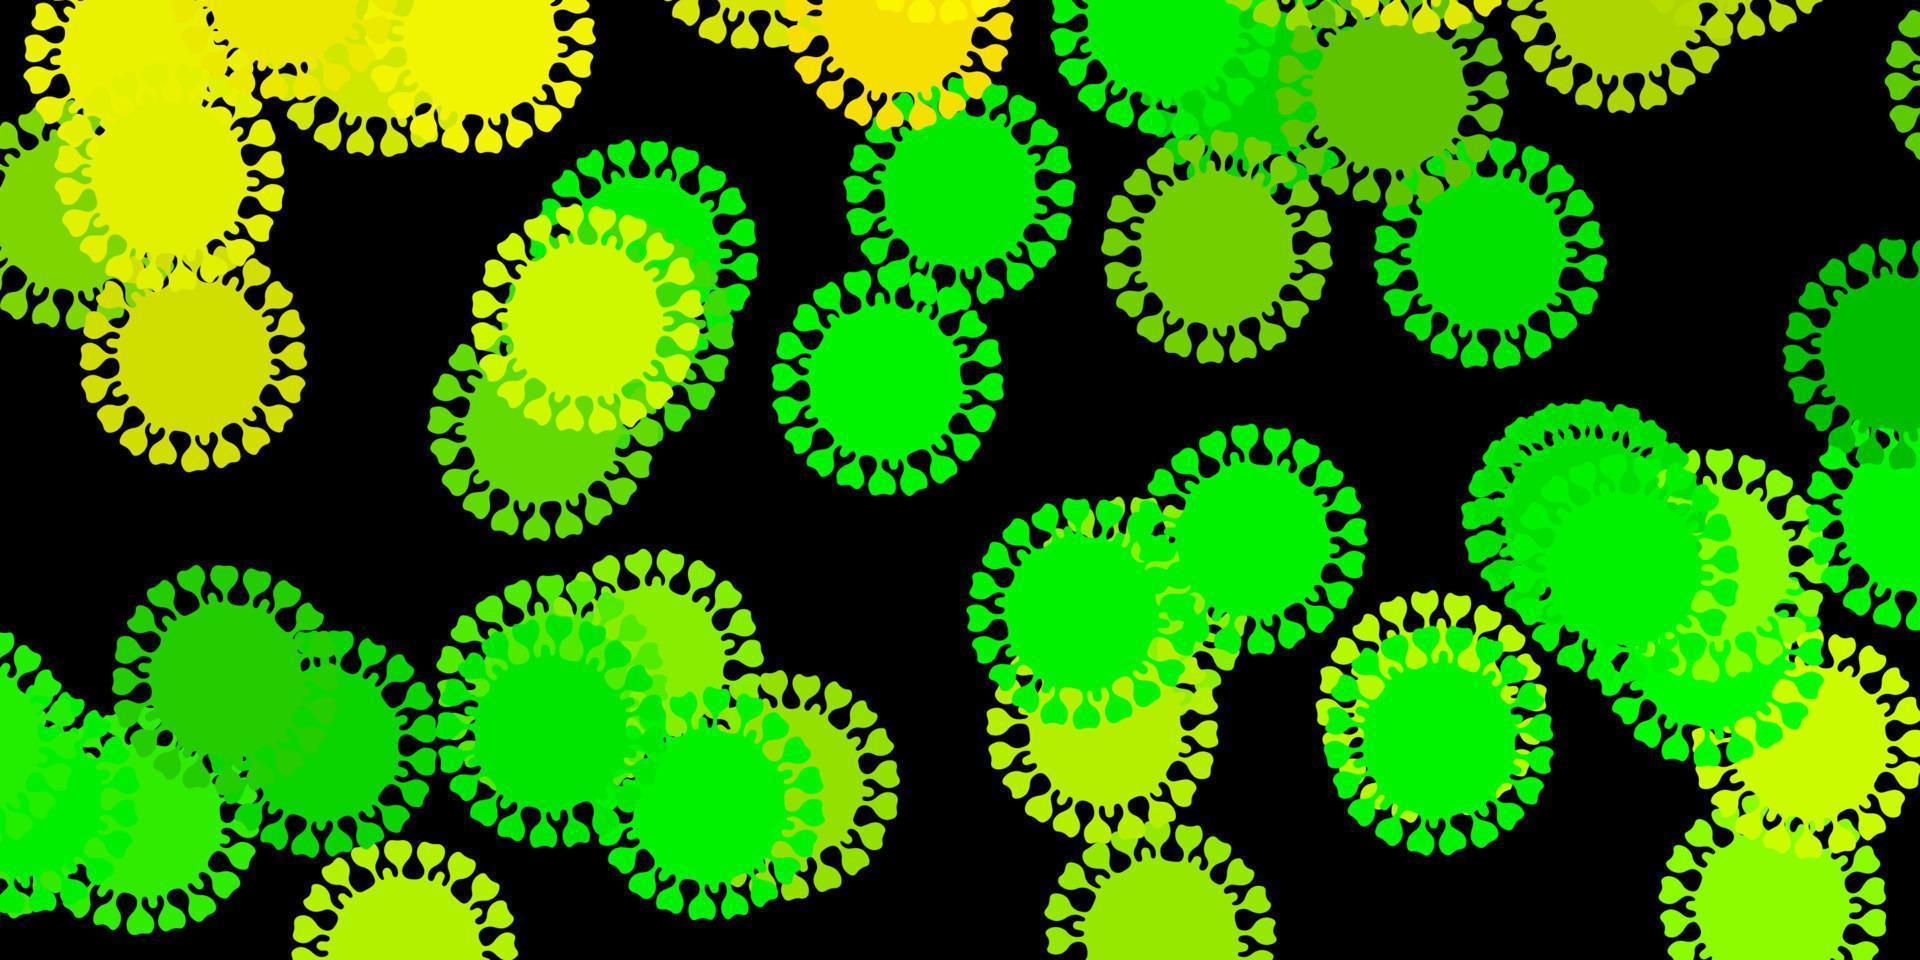 textura de vetor verde e amarelo escuro com símbolos de doença.